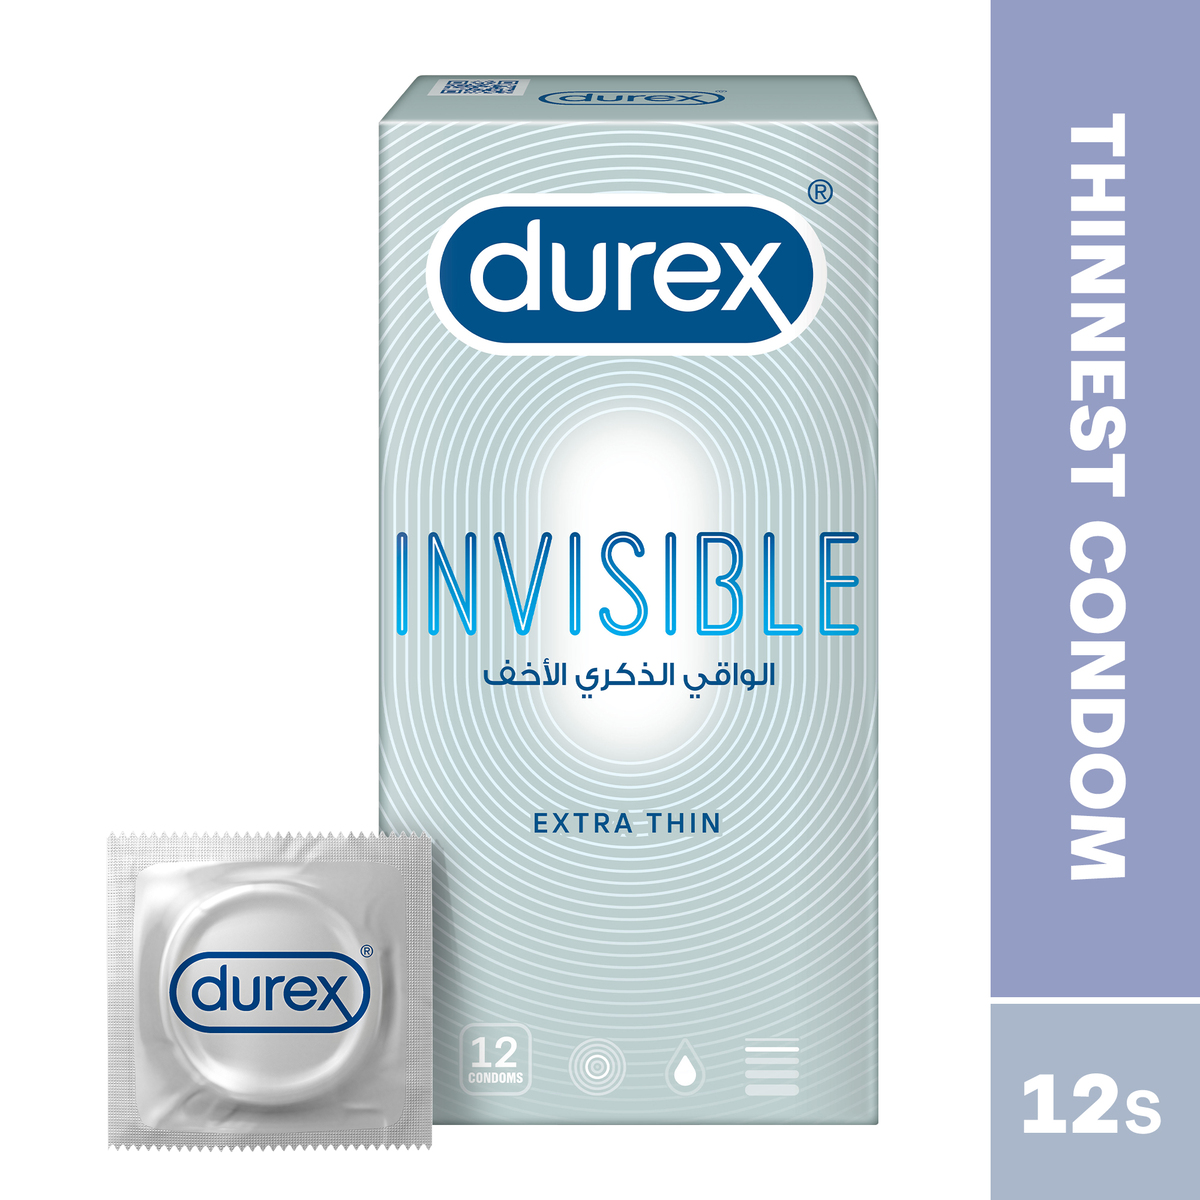 Durex Invisible Extra Thin Condom 12 pcs